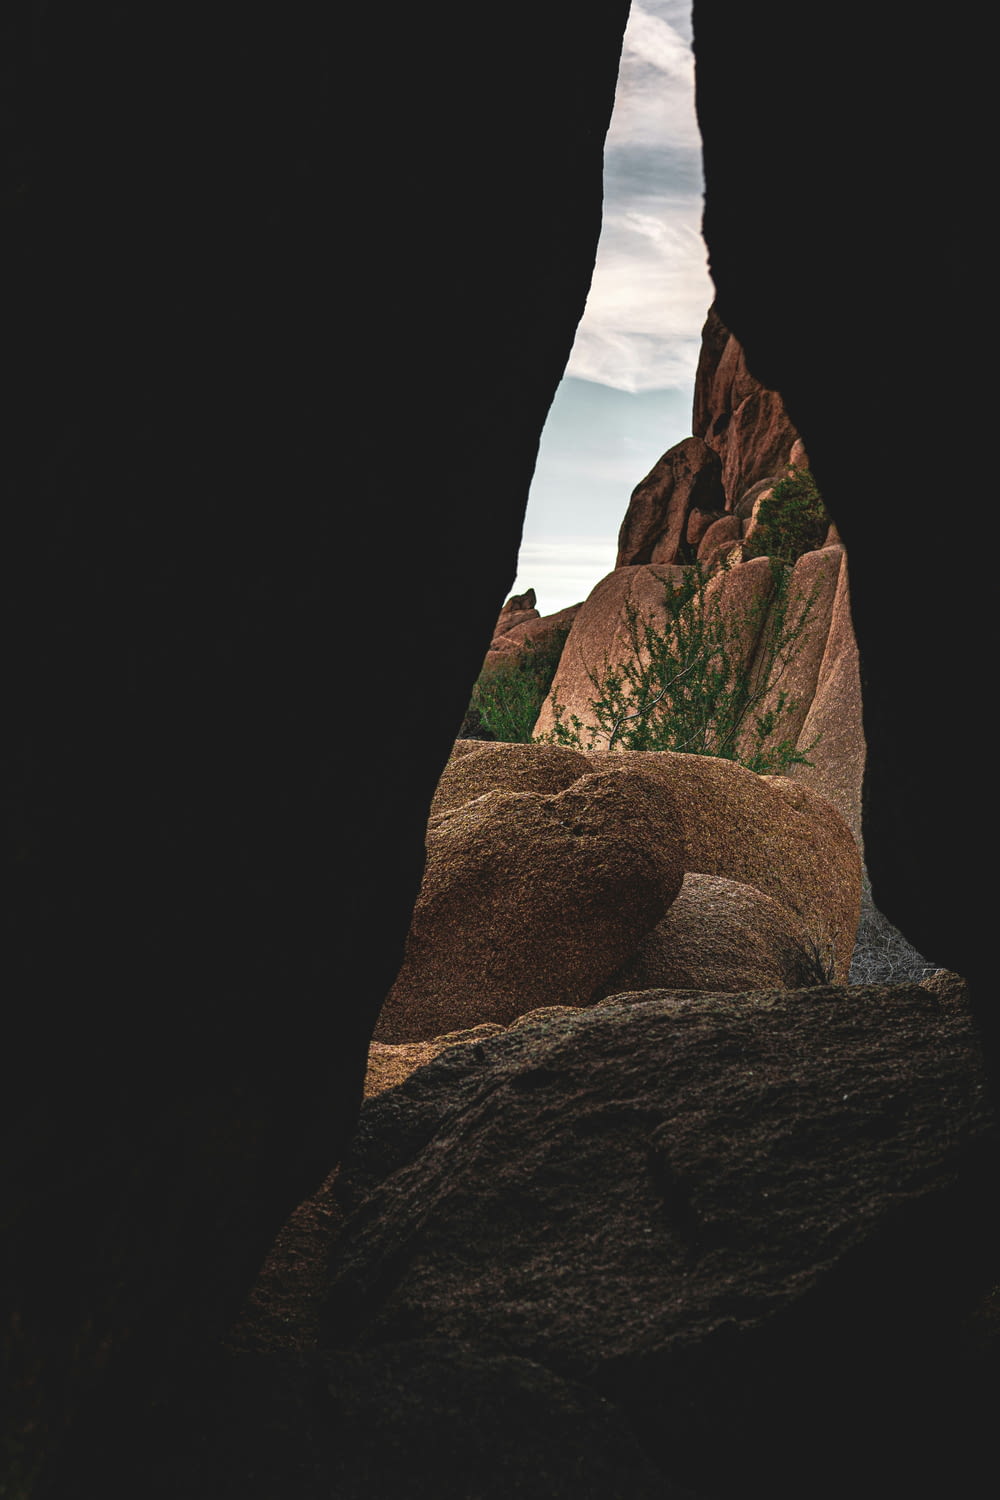 a view of a mountain through a cave